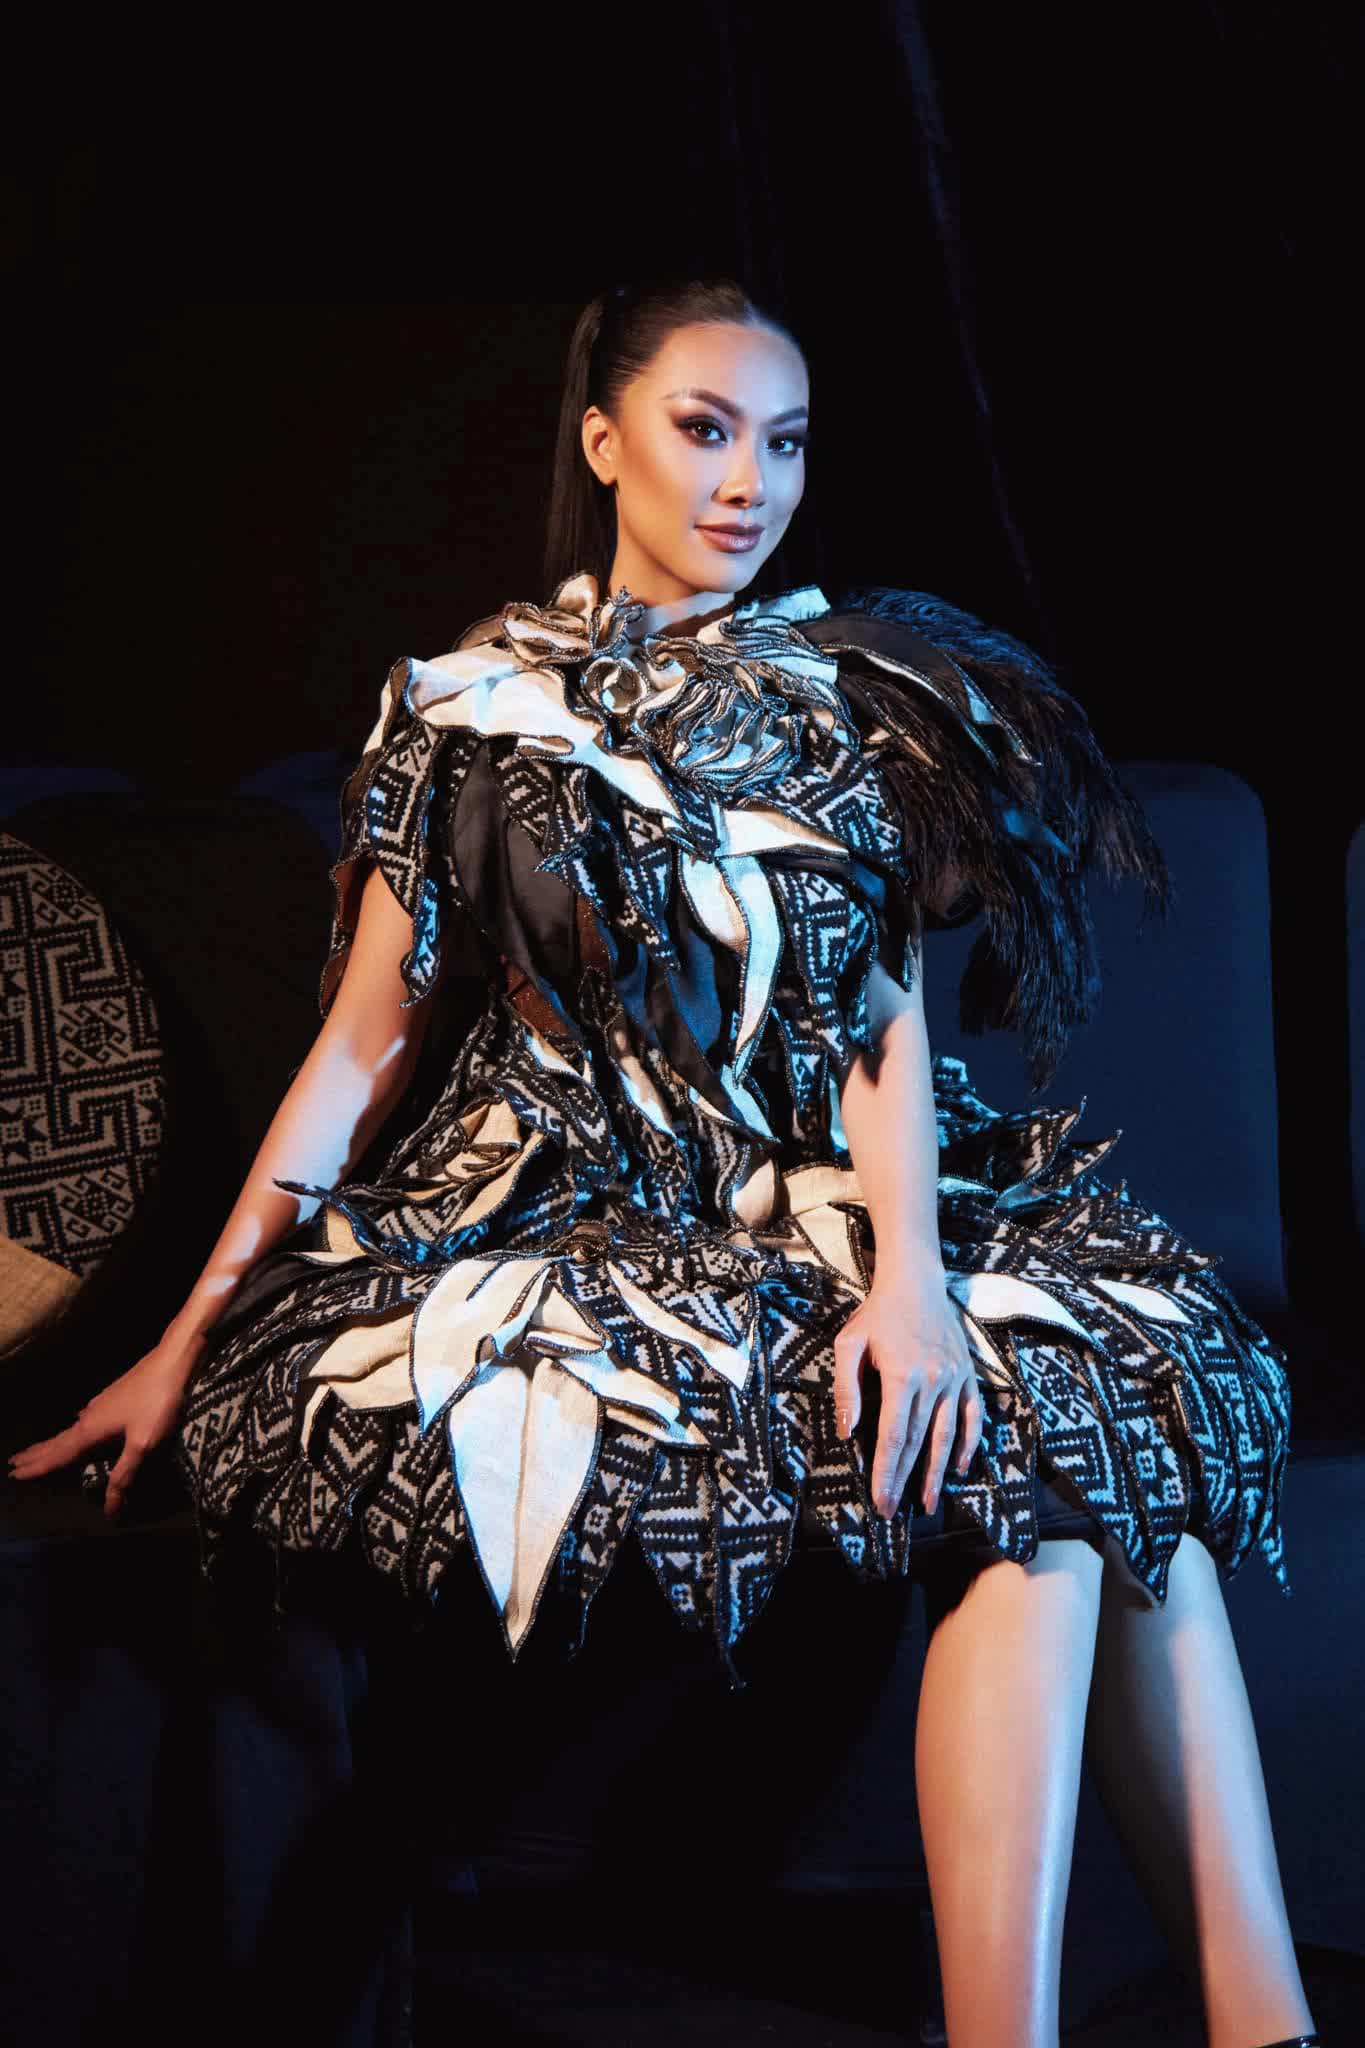 Á hậu Kim Duyên 3 năm sau Hoa hậu Hoàn vũ Việt Nam 2019: Đoạt danh hiệu lớn ở quốc tế nhưng vẫn bị nhắc lùm xùm học vấn - ảnh 3